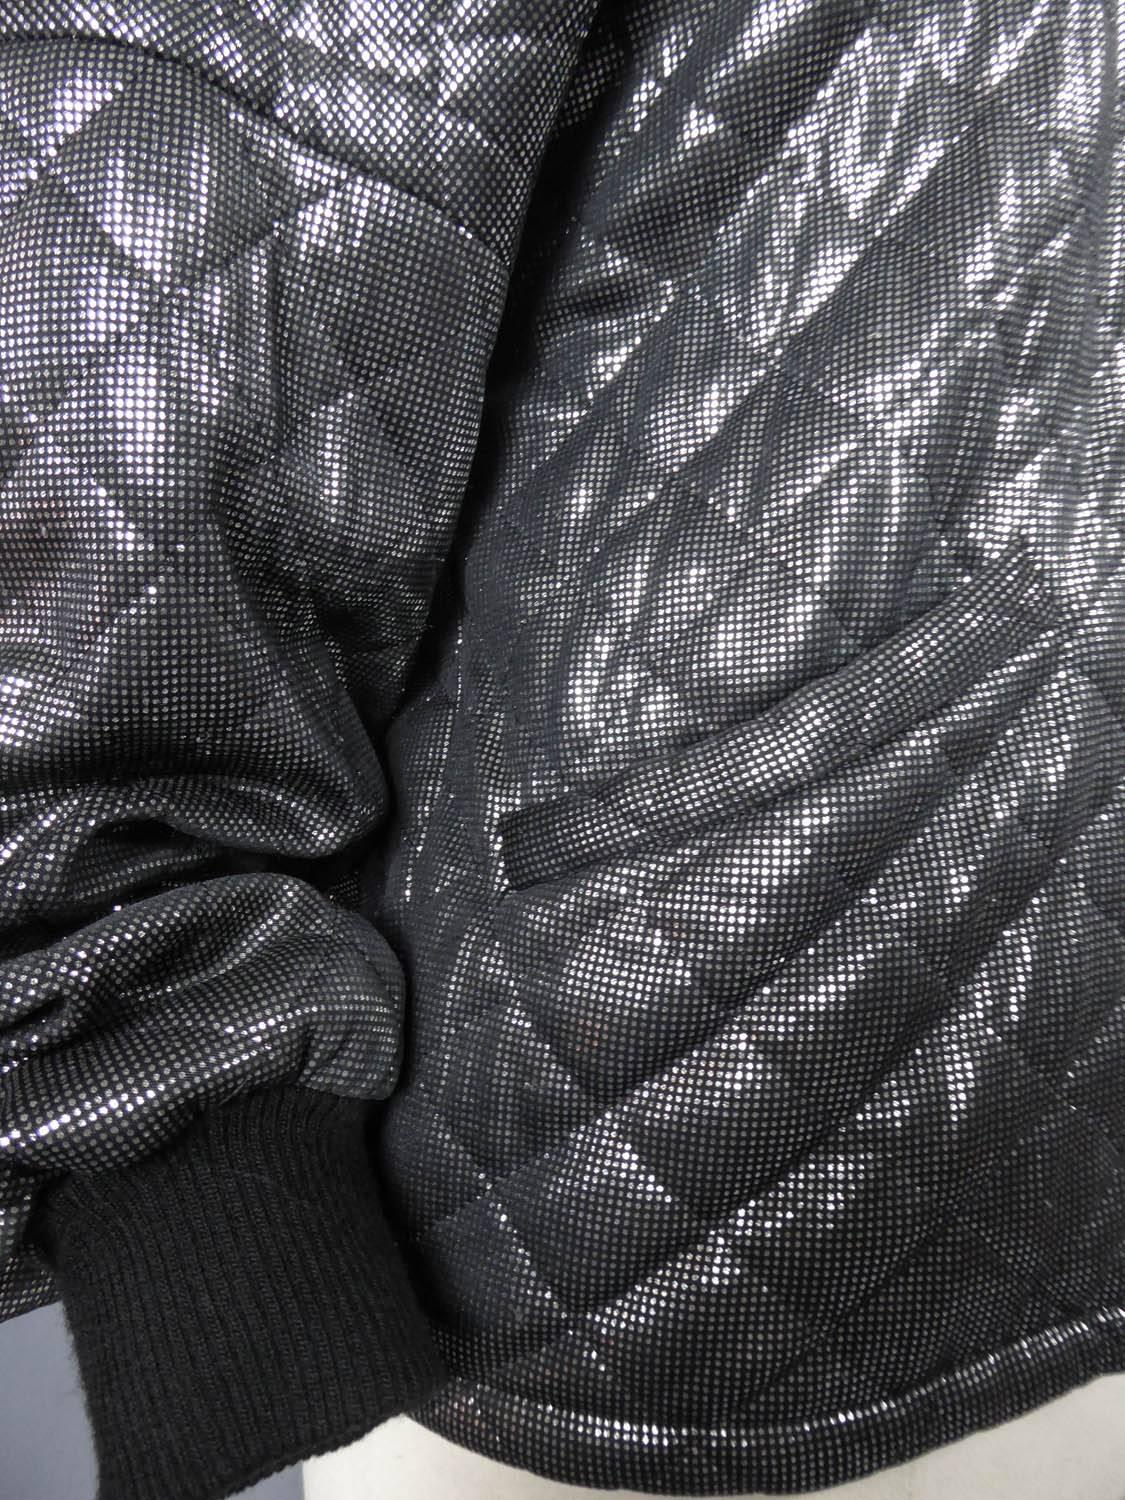 Veste Lanvin noire et argentée, circa 1980 en vente 1